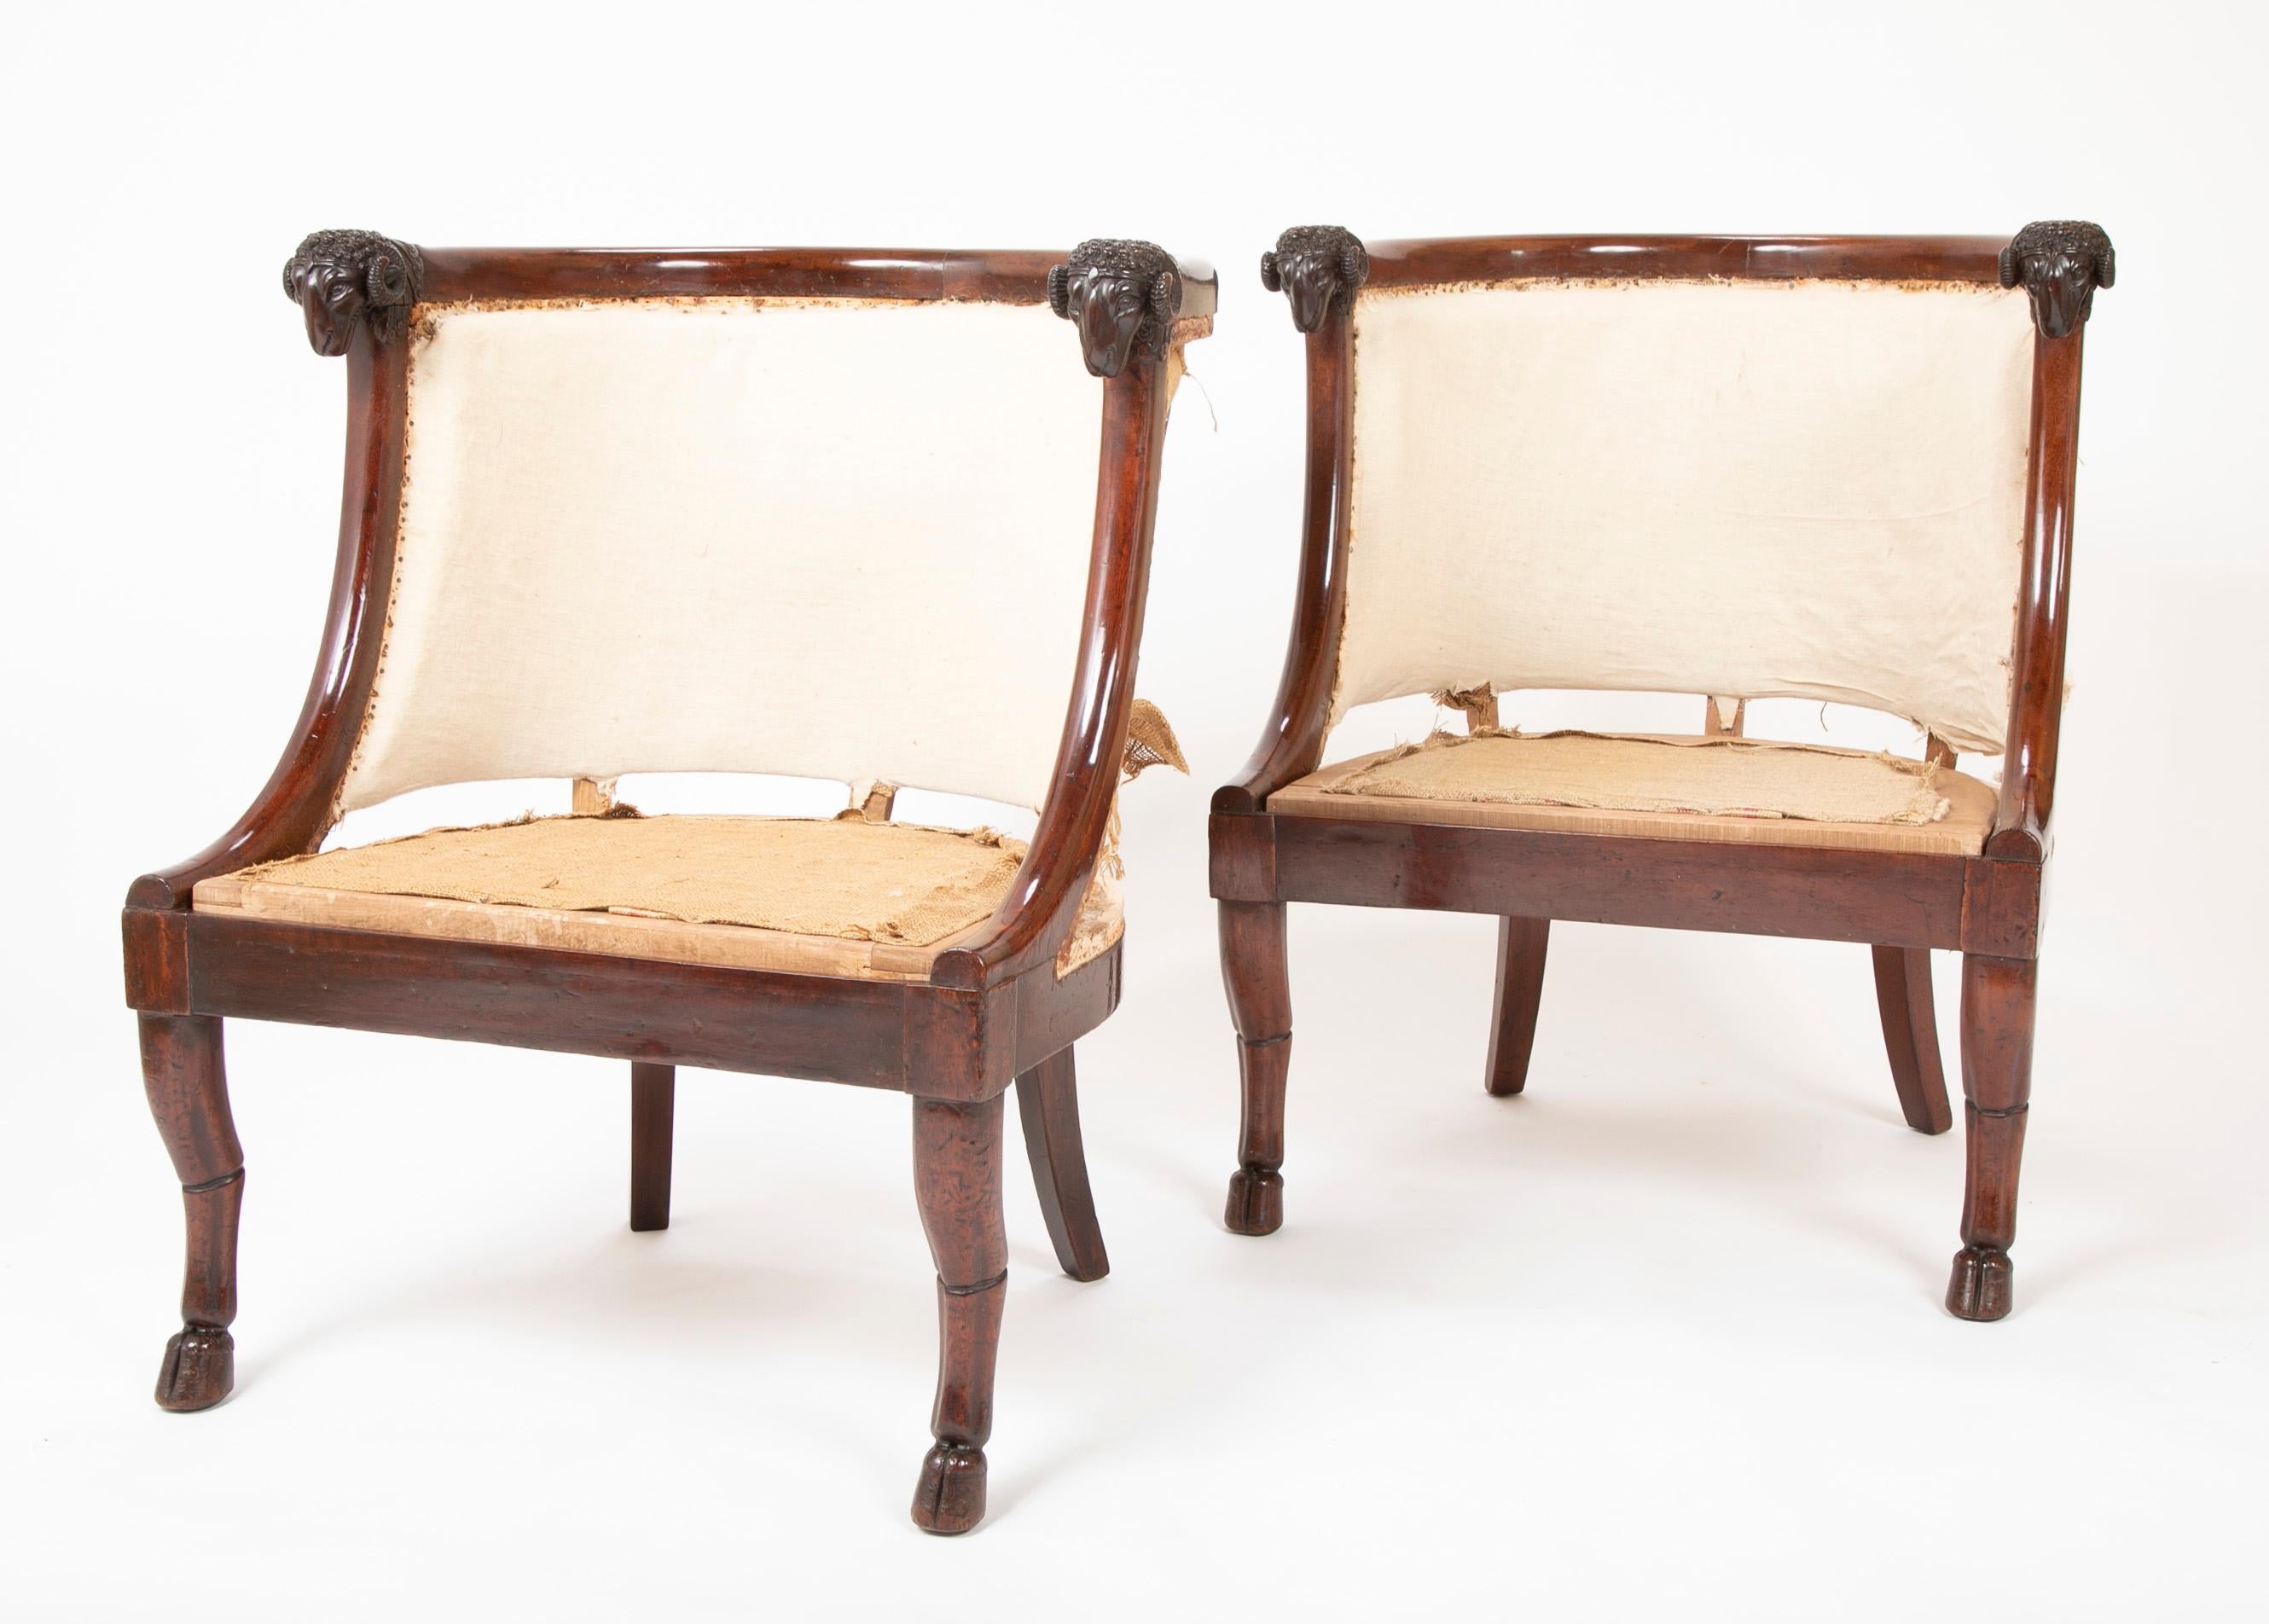 Ein sehr schönes Paar französischer Empire-Sessel aus Mahagoni, Jacob Desmalter zugeschrieben, um 1805. Die geformten Rückseiten enden in wunderschön geschnitzten Widderköpfen, die eleganten Beine in Huffüßen. Wunderbares Design, der Inbegriff des